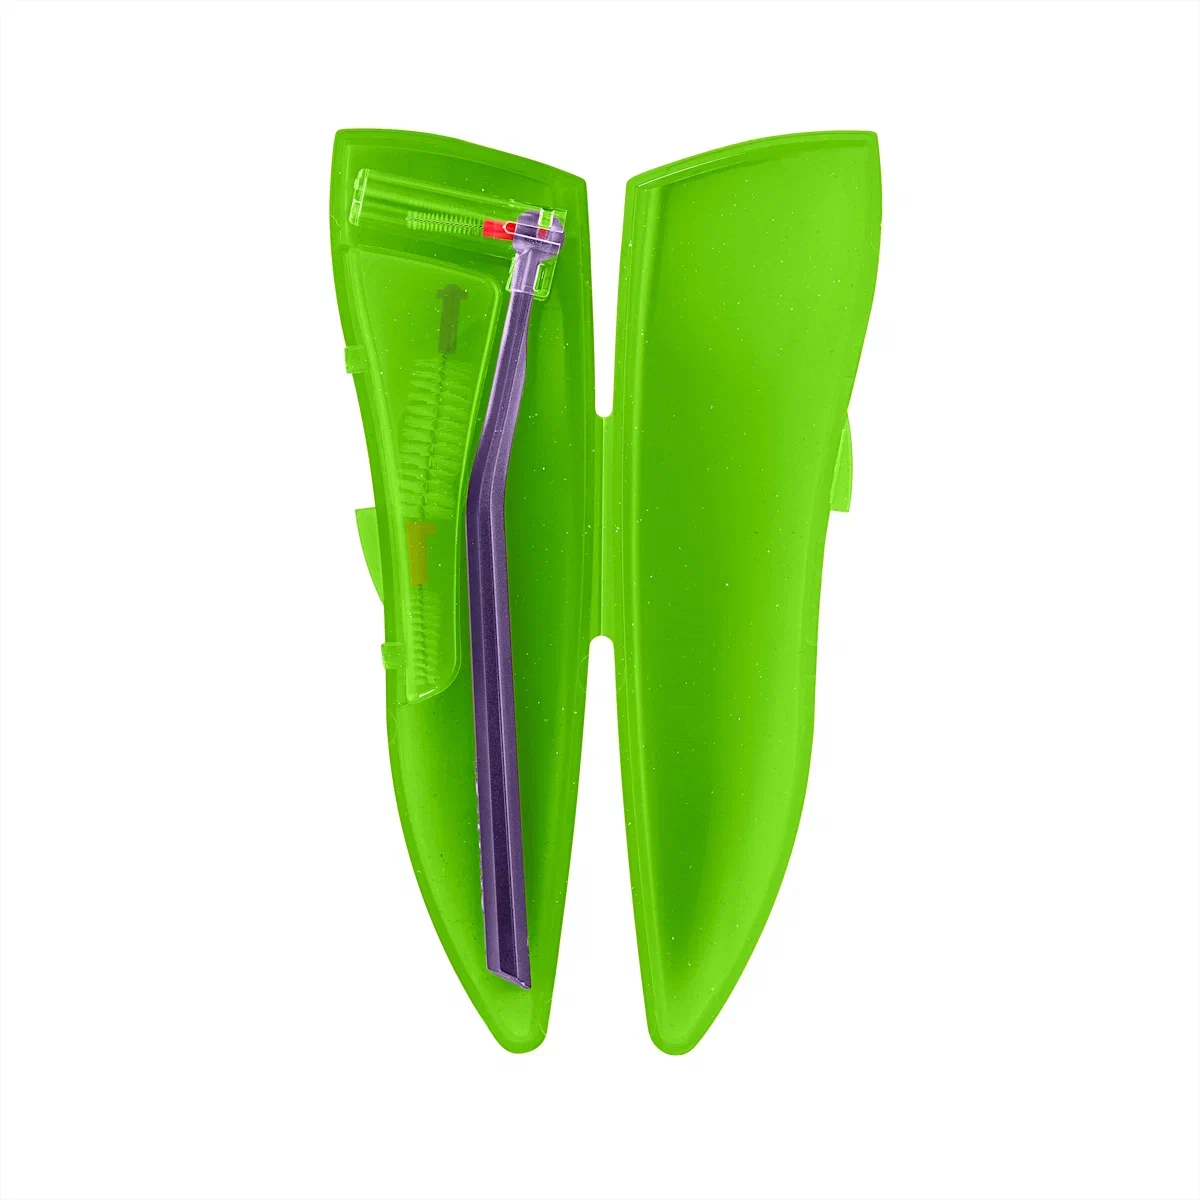 Набор для гигиенического ухода Curaprox ортодонтический, с держателем UHS470, зелёный набор для гигиенического ухода curaprox ортодонтический с держателем uhs470 фиолетовый